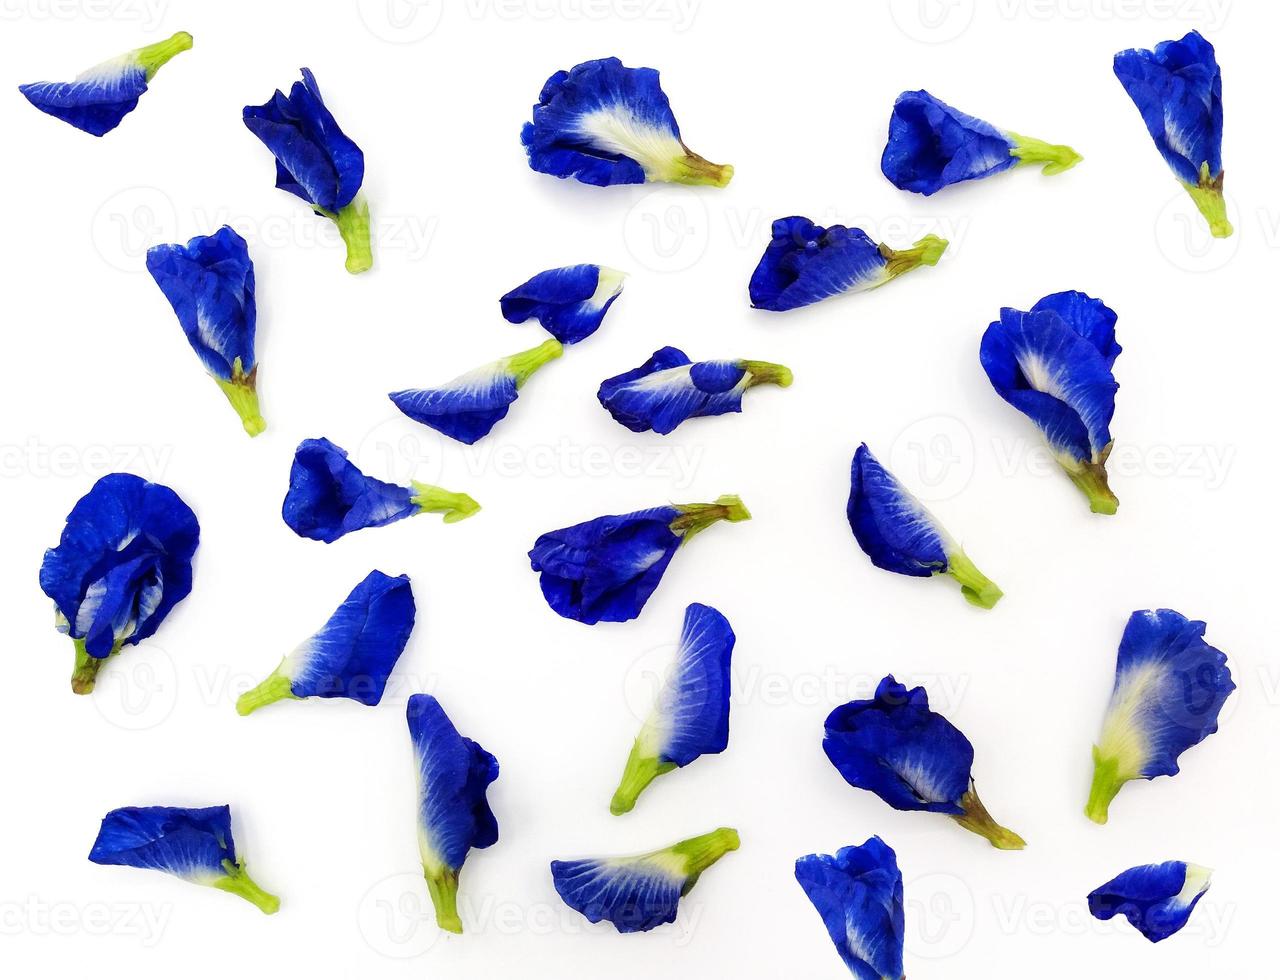 topp se av blå, lila, vioet eller fjäril ärta blomma isolerat på vit bakgrund. skönhet av natur, kronblad, grupp av flora och blommig mönster. vetenskaplig namn av blomma är Clitoria tematea l. foto